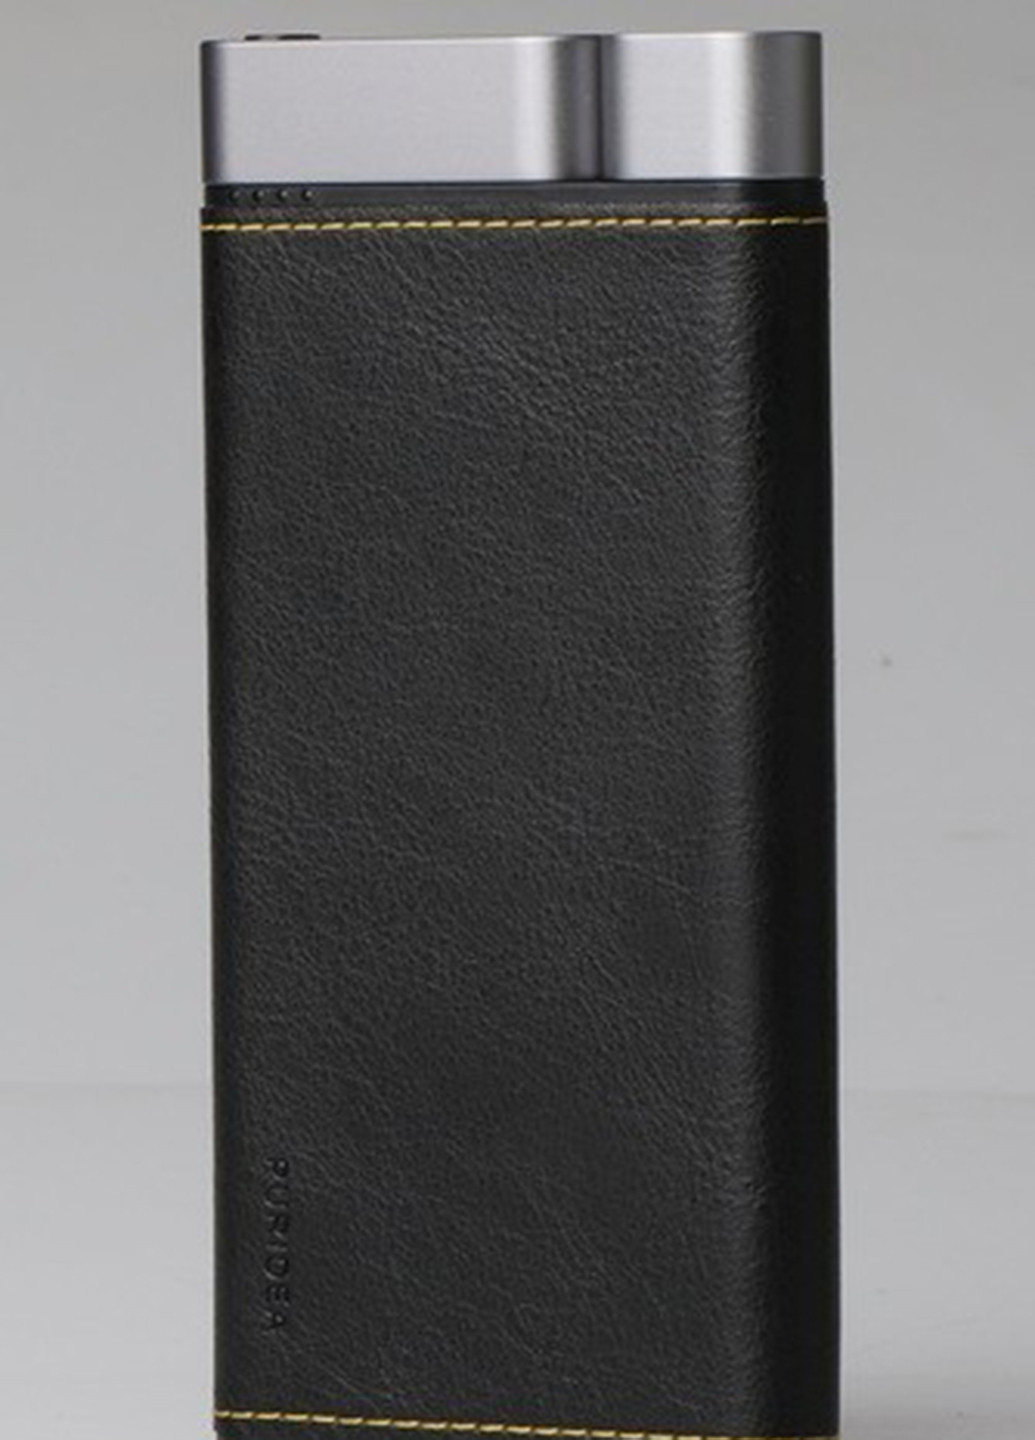 Універсальна батарея X01 10000mAh Li-Pol + TYPE-C Leather Black Puridea x01 10000mah li-pol +type-c leather black (135165333)